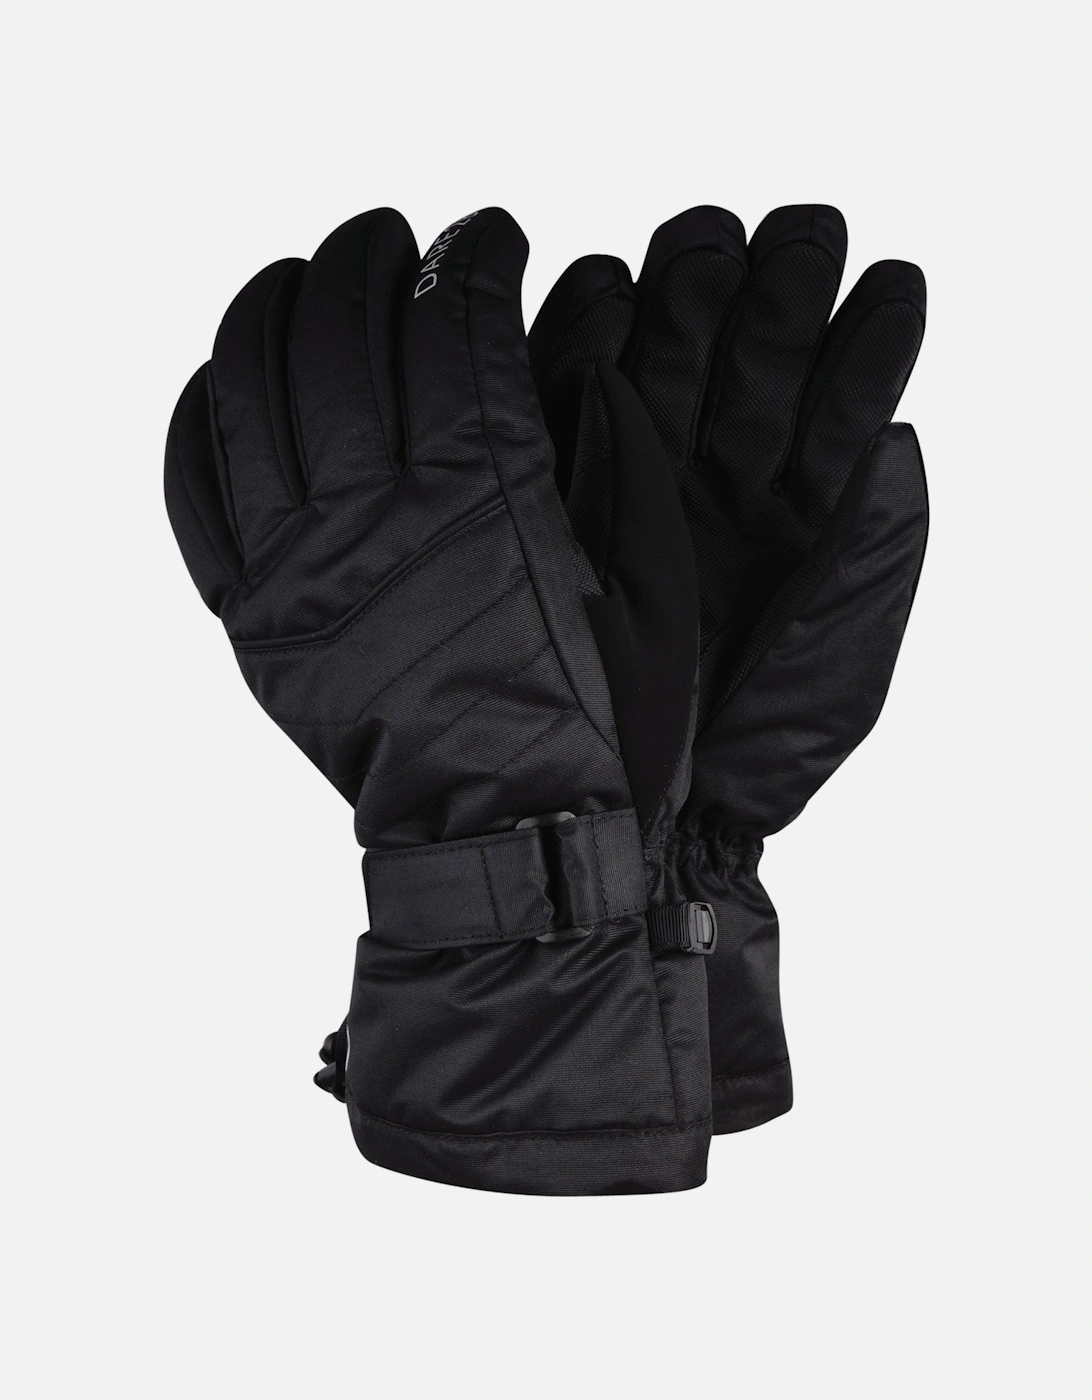 Womens Acute Adjustable Waterproof Ski Gloves - Black, 6 of 5